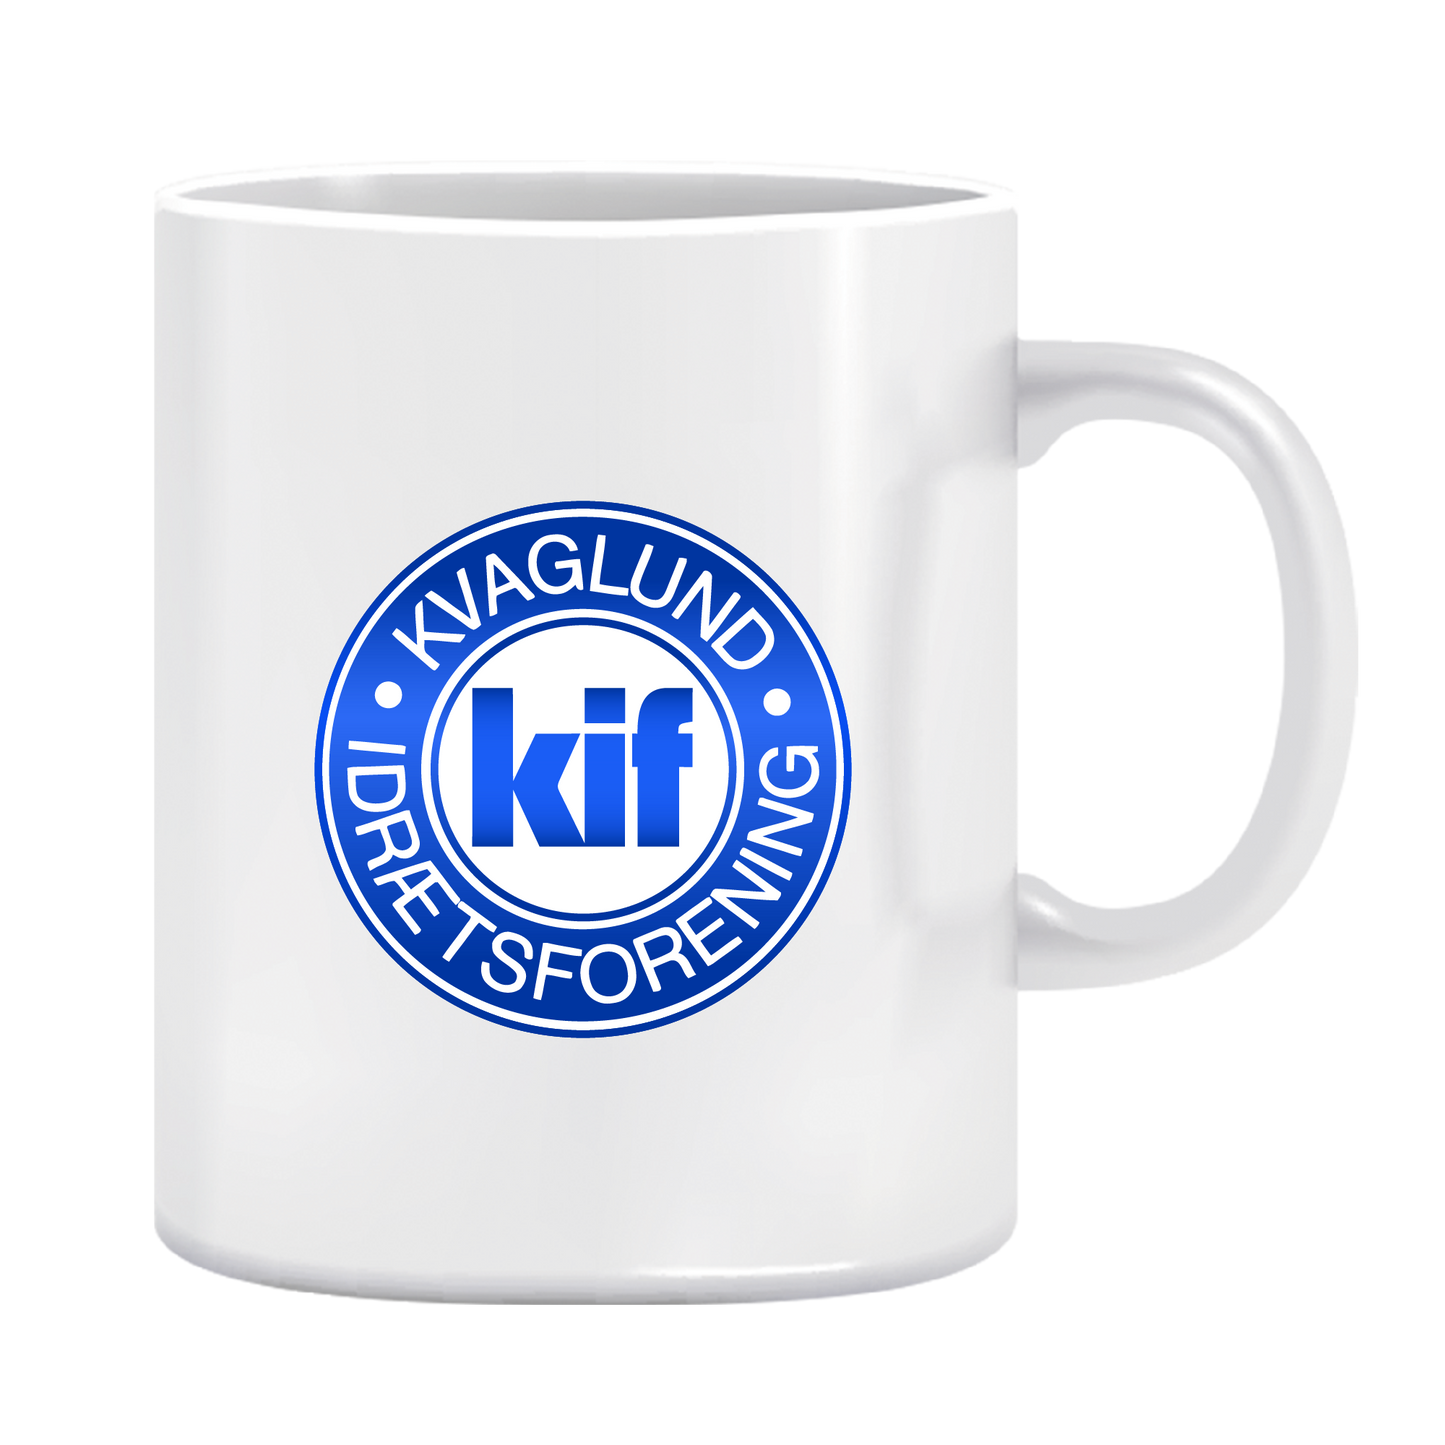 Kvaglund IF - Kop med klub logo